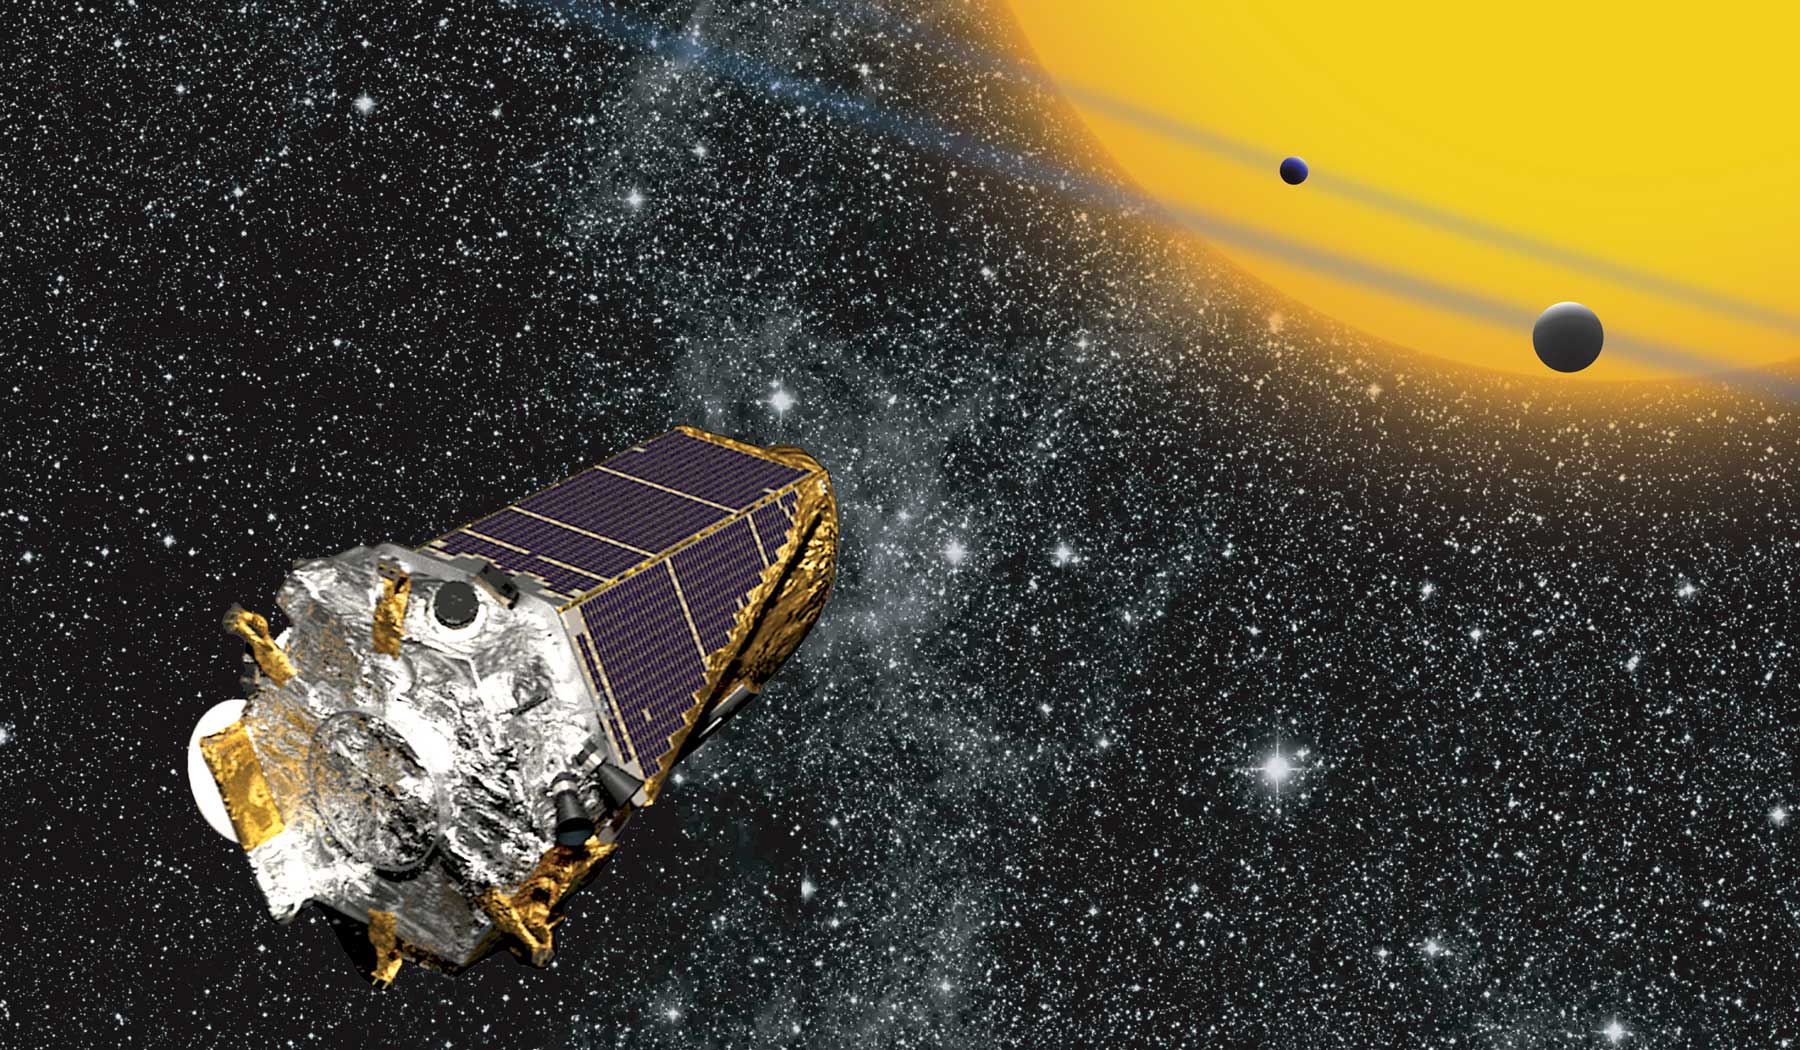 Cette vue d'artiste montre le satellite Kepler, de la Nasa, en train de chasser des exoplanètes par la méthode du transit planétaire. Cet instrument spatial peut&nbsp;aussi étudier les variations de luminosité des étoiles causées par les ondes qui les parcourent : c'est la sismologie stellaire, ou&nbsp;astérosismologie. © Nasa, W Stenzel